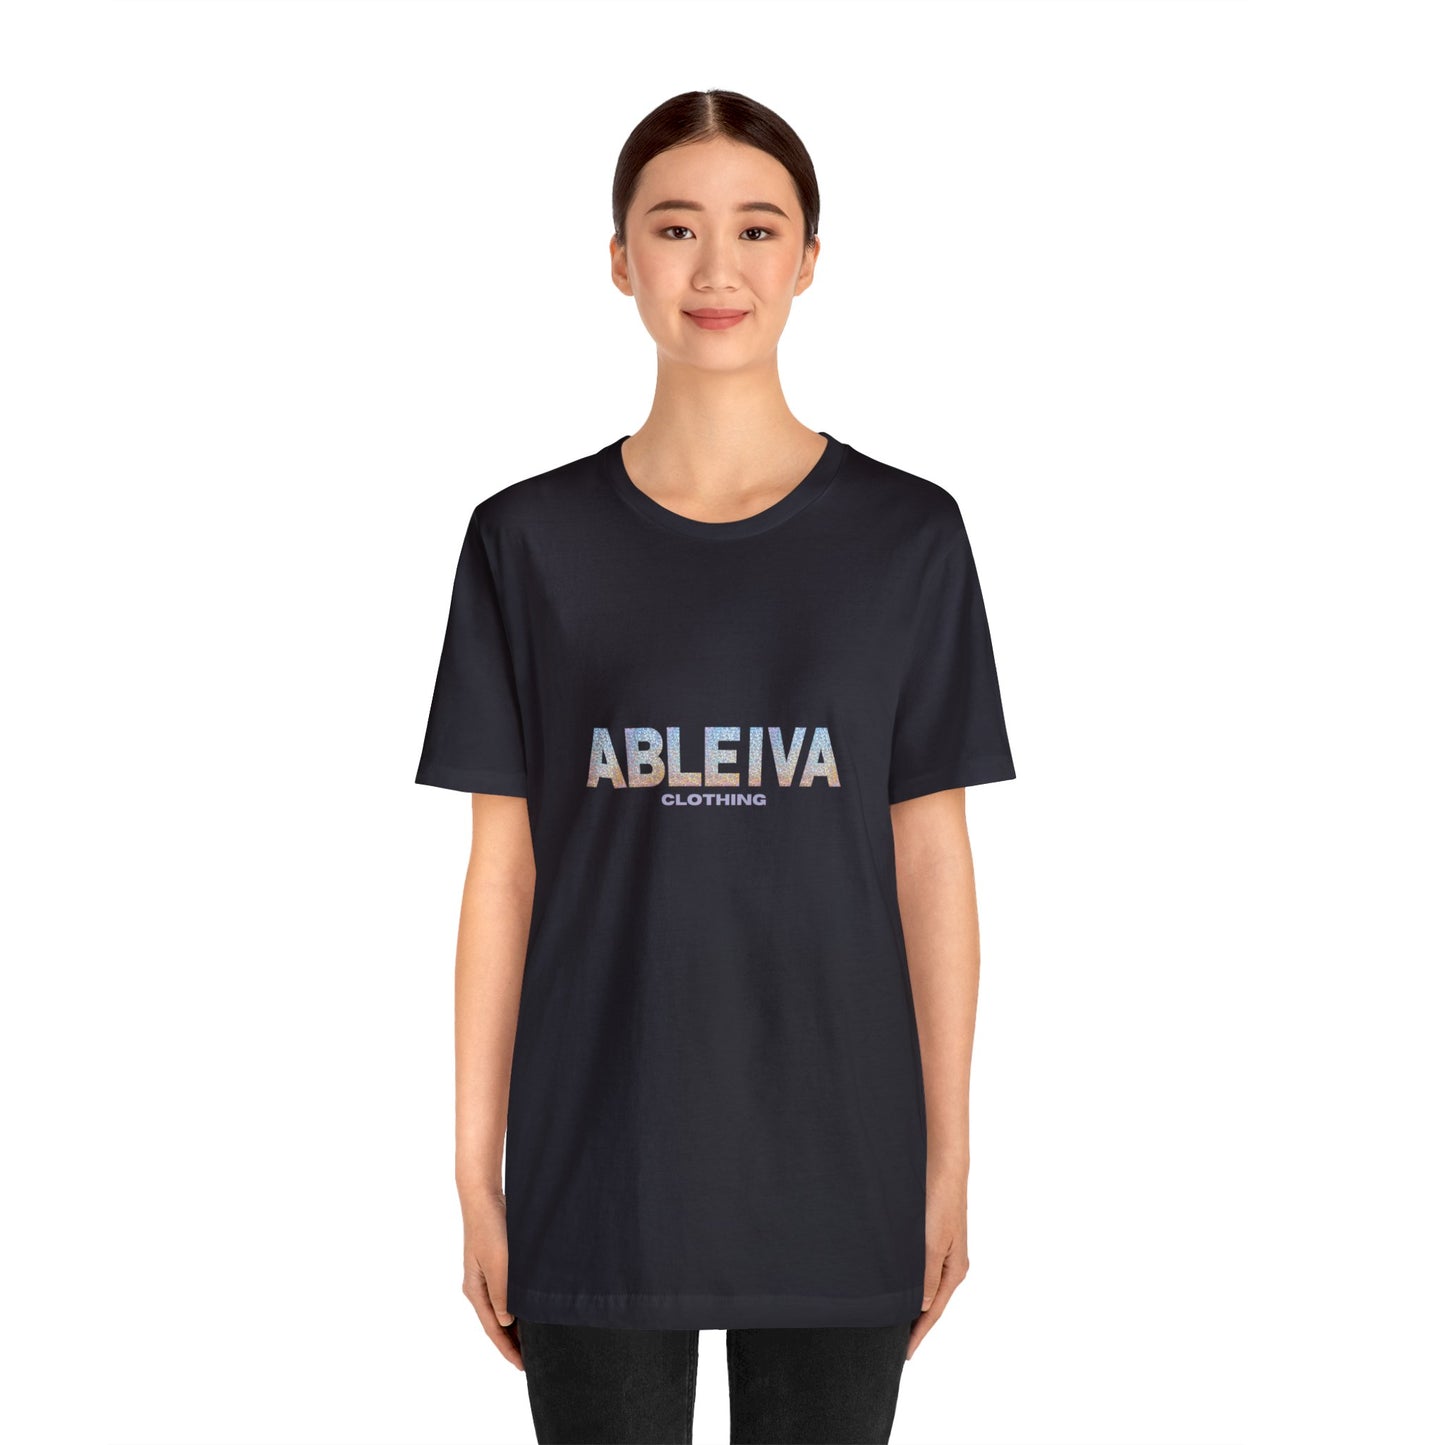 Ableiva (I'll Be Back....Jesus) Jersey Short Sleeve Tee